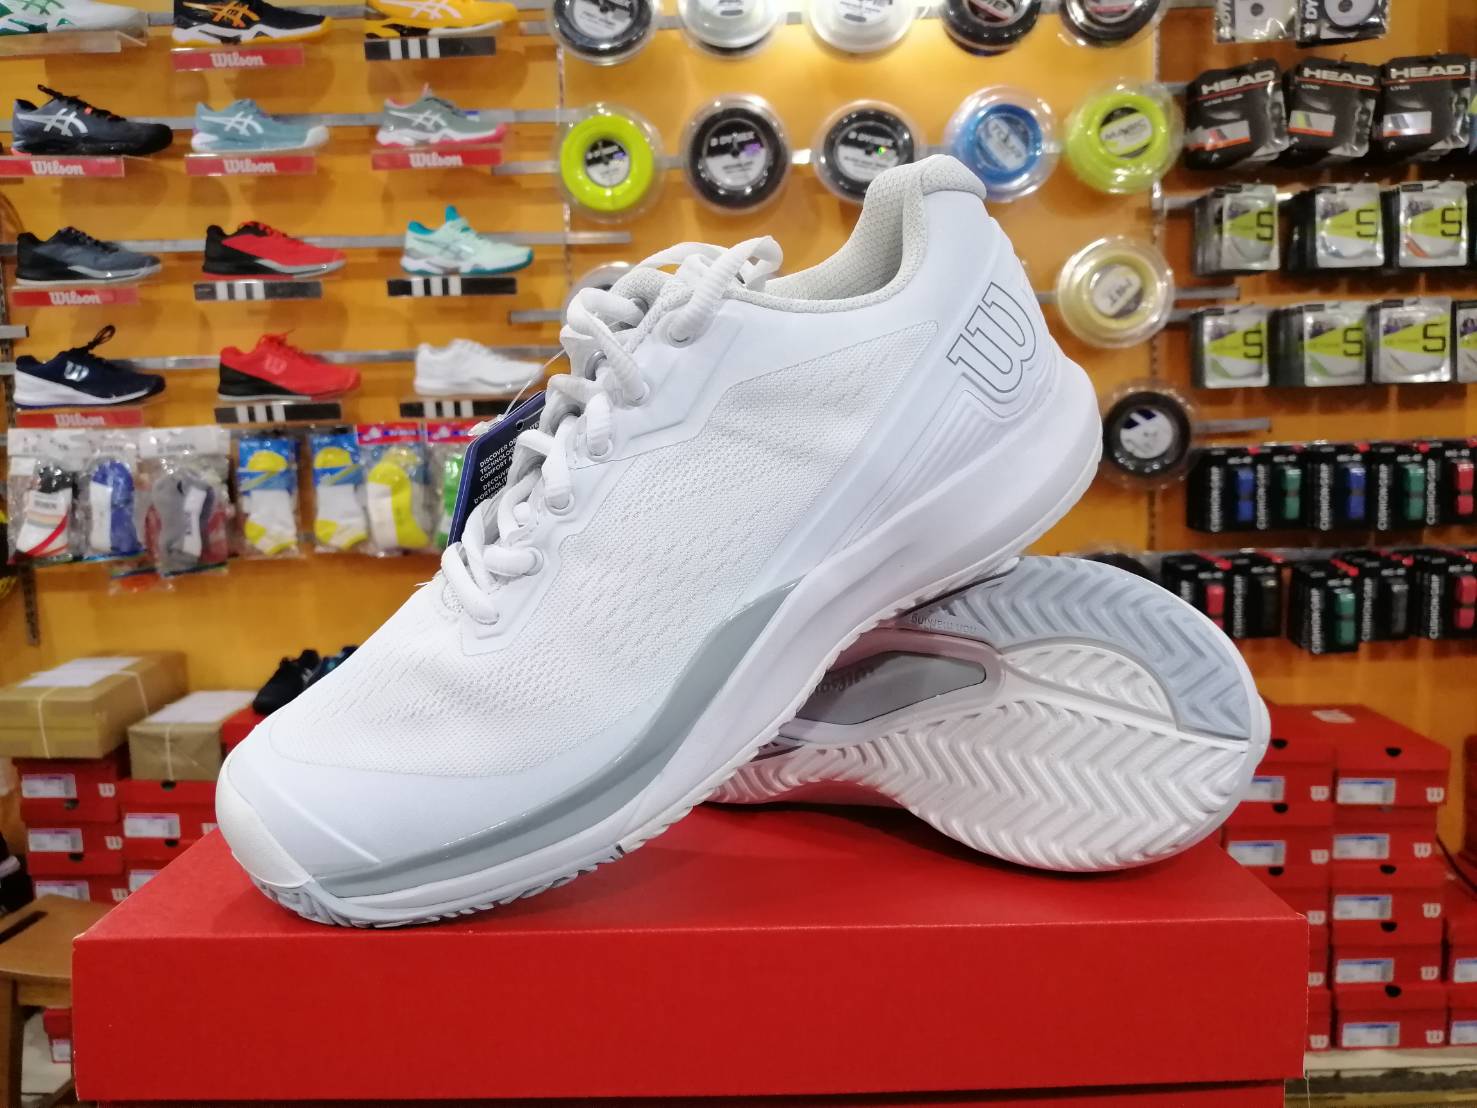 รองเท้าเทนนิสรุ่นใหม่จาก Wilson Rush Pro 3.5  ผู้หญิงสีขาวเริ่มที่ เบอร์ US 6.5-9.5) ราคา 3,300  บาท